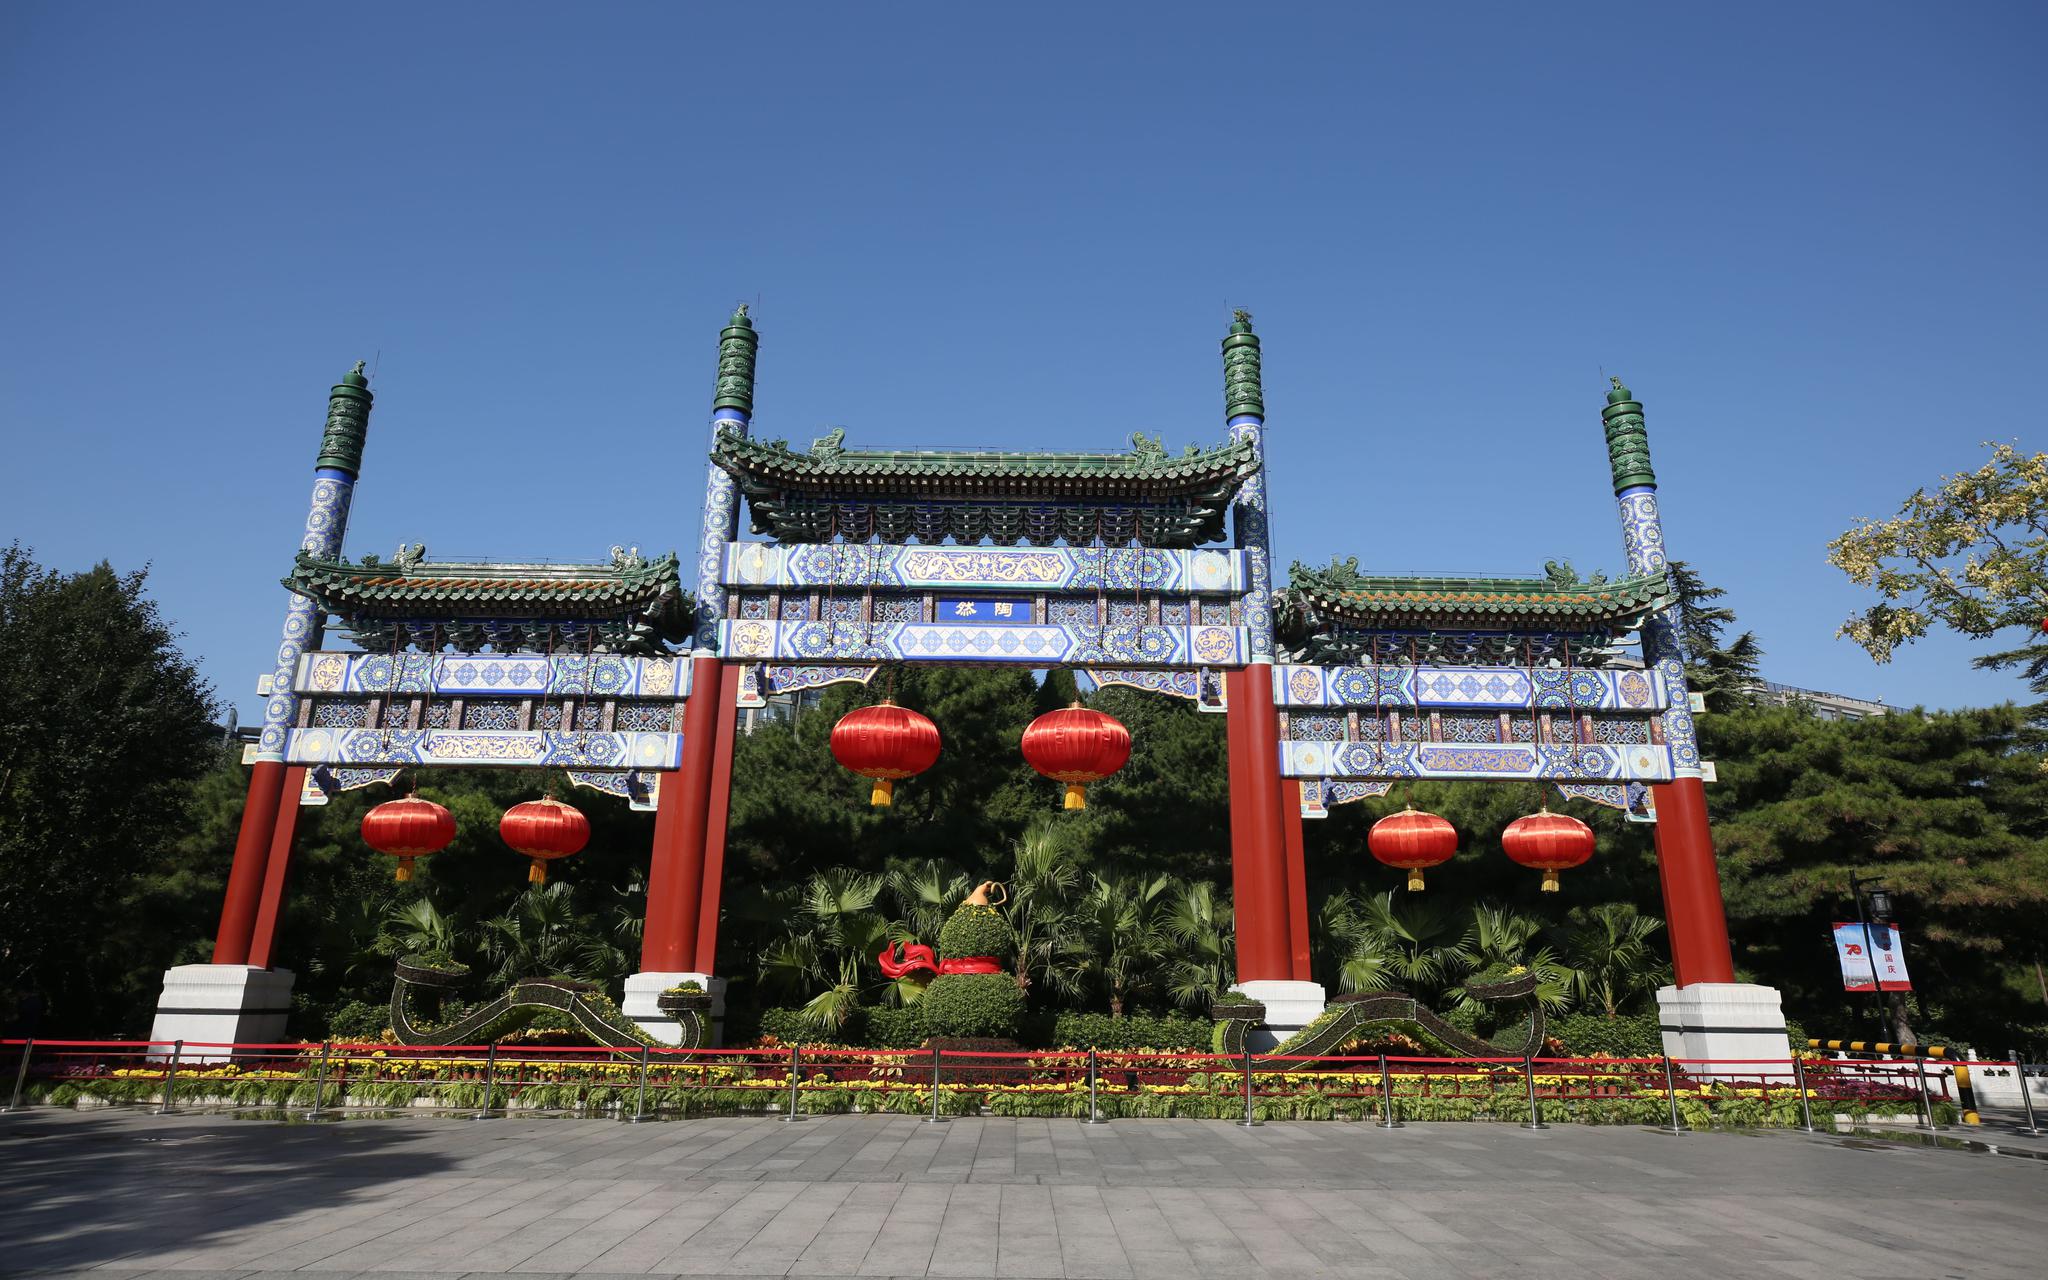 陶然亭公园“福禄吉祥”花坛中的葫芦造型，为公园园艺职工自行培育裱扎而成。北京市国庆游园指挥部 供图